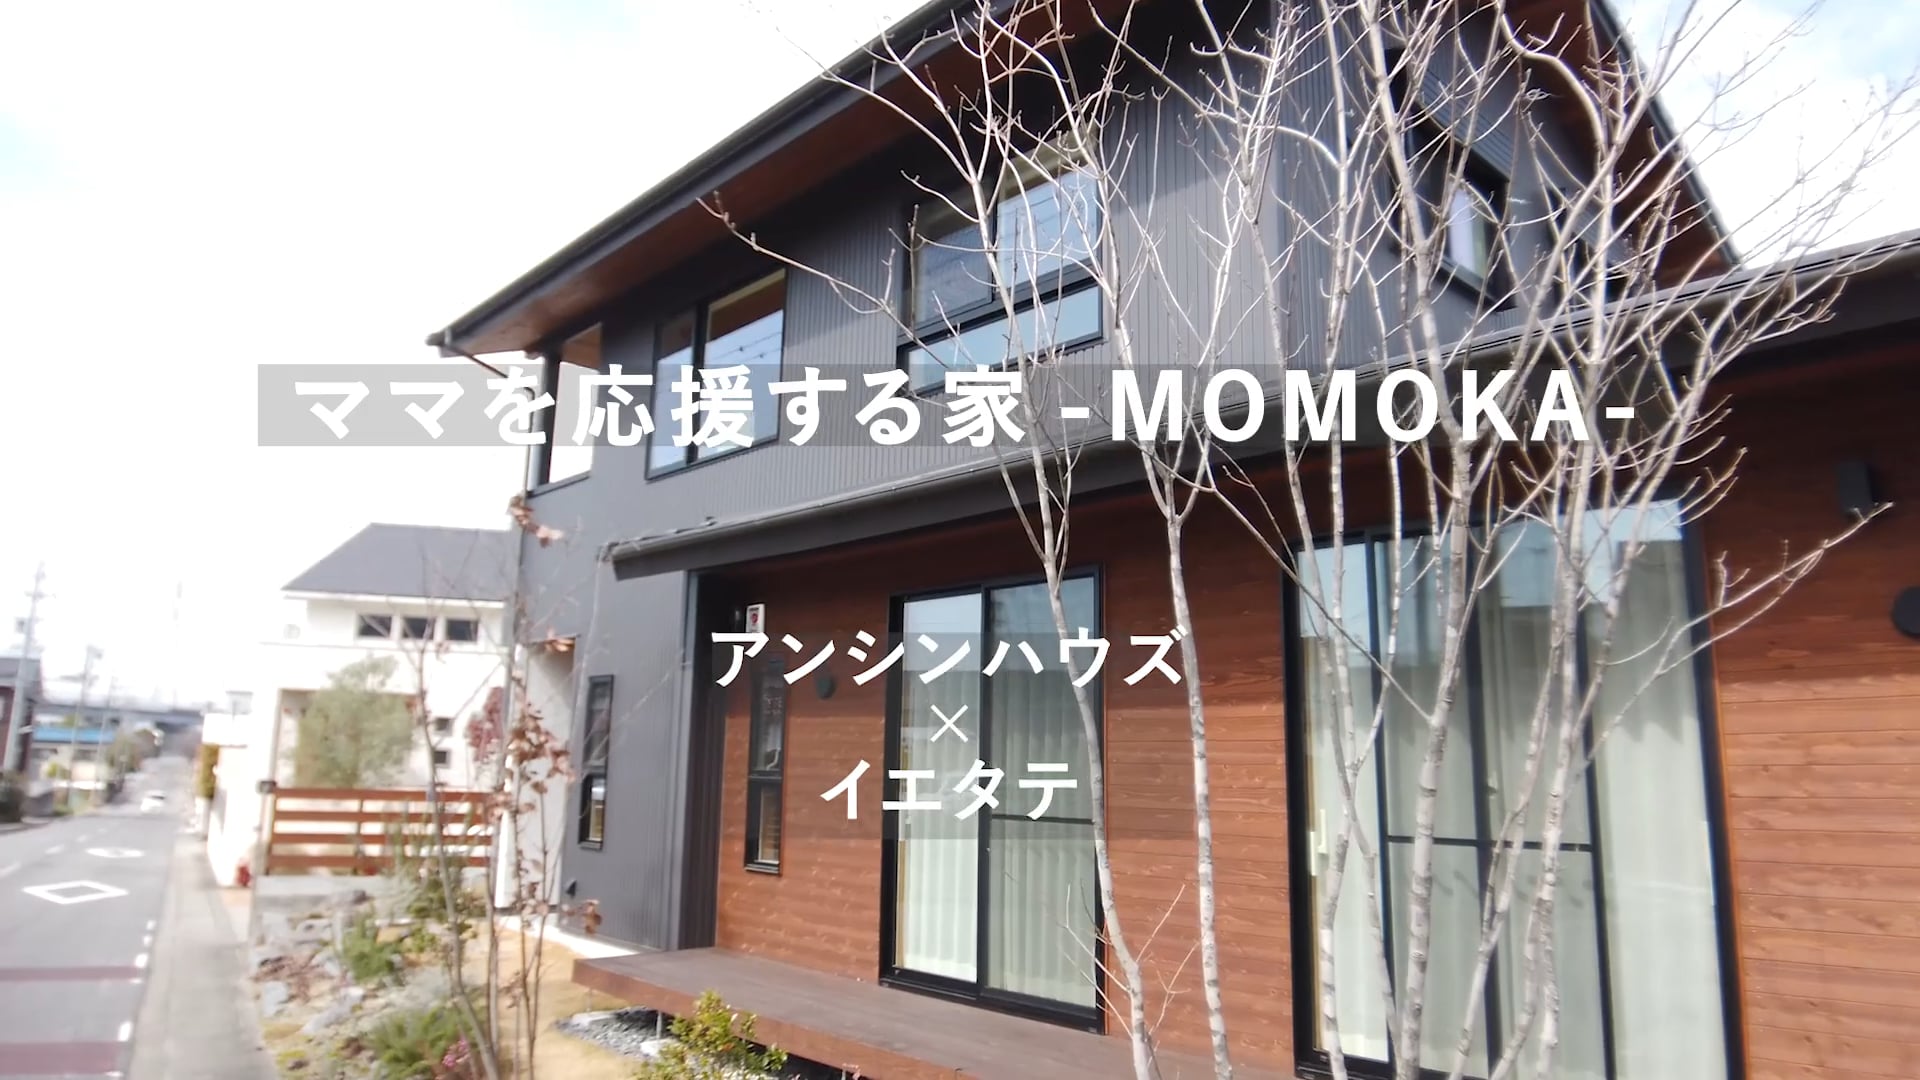 ママを応援する家 -MOMOKA-